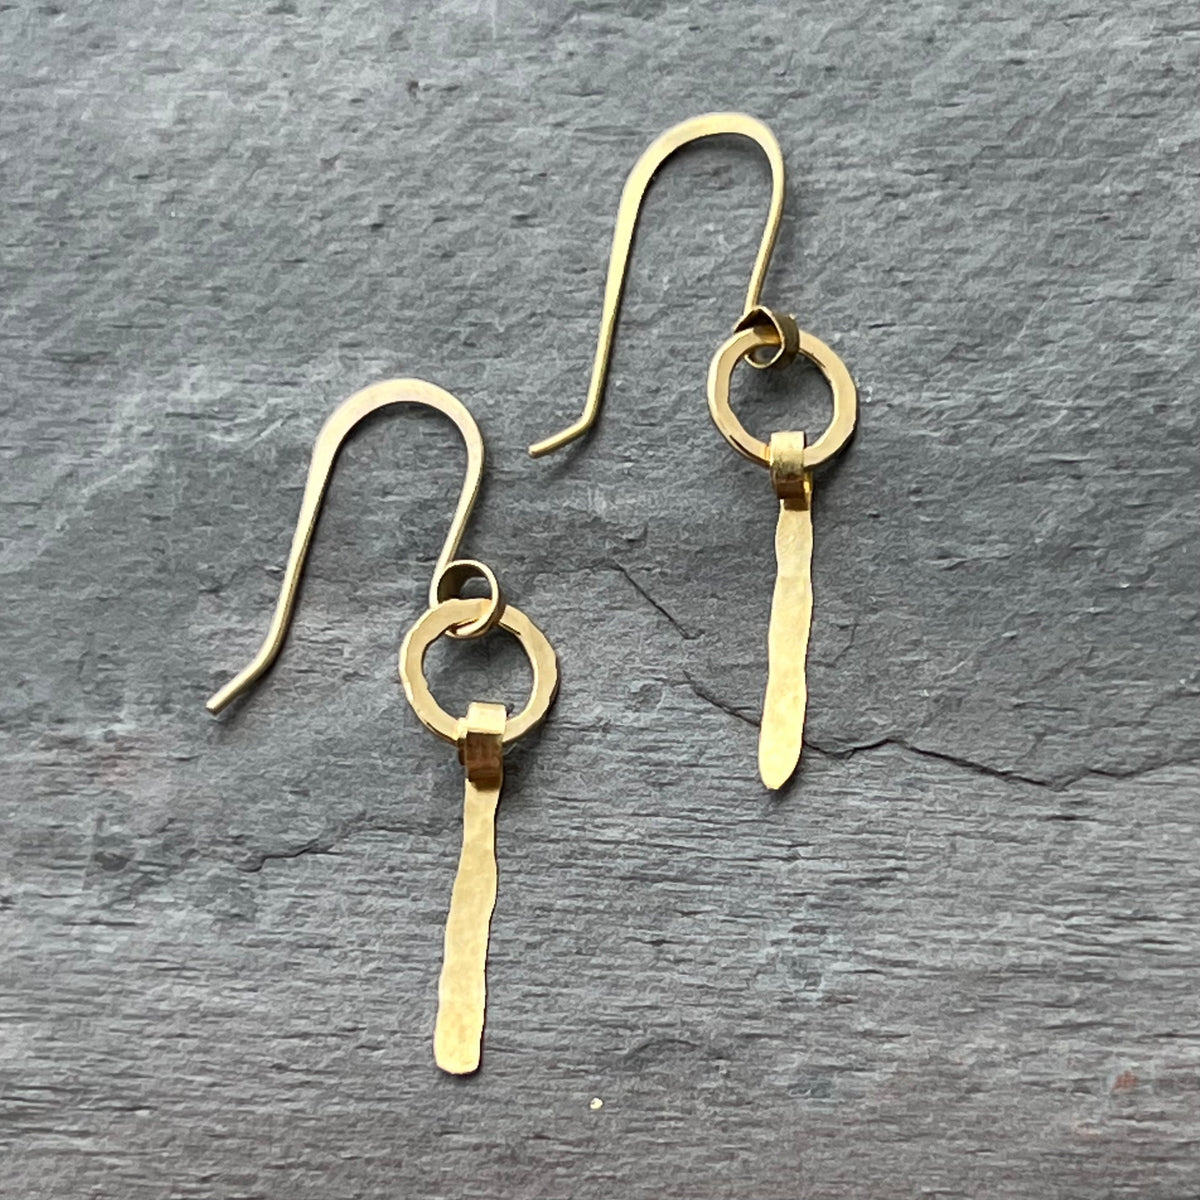 Handmade 14K gold earrings by Garden of Silver in Westhampton Beach.